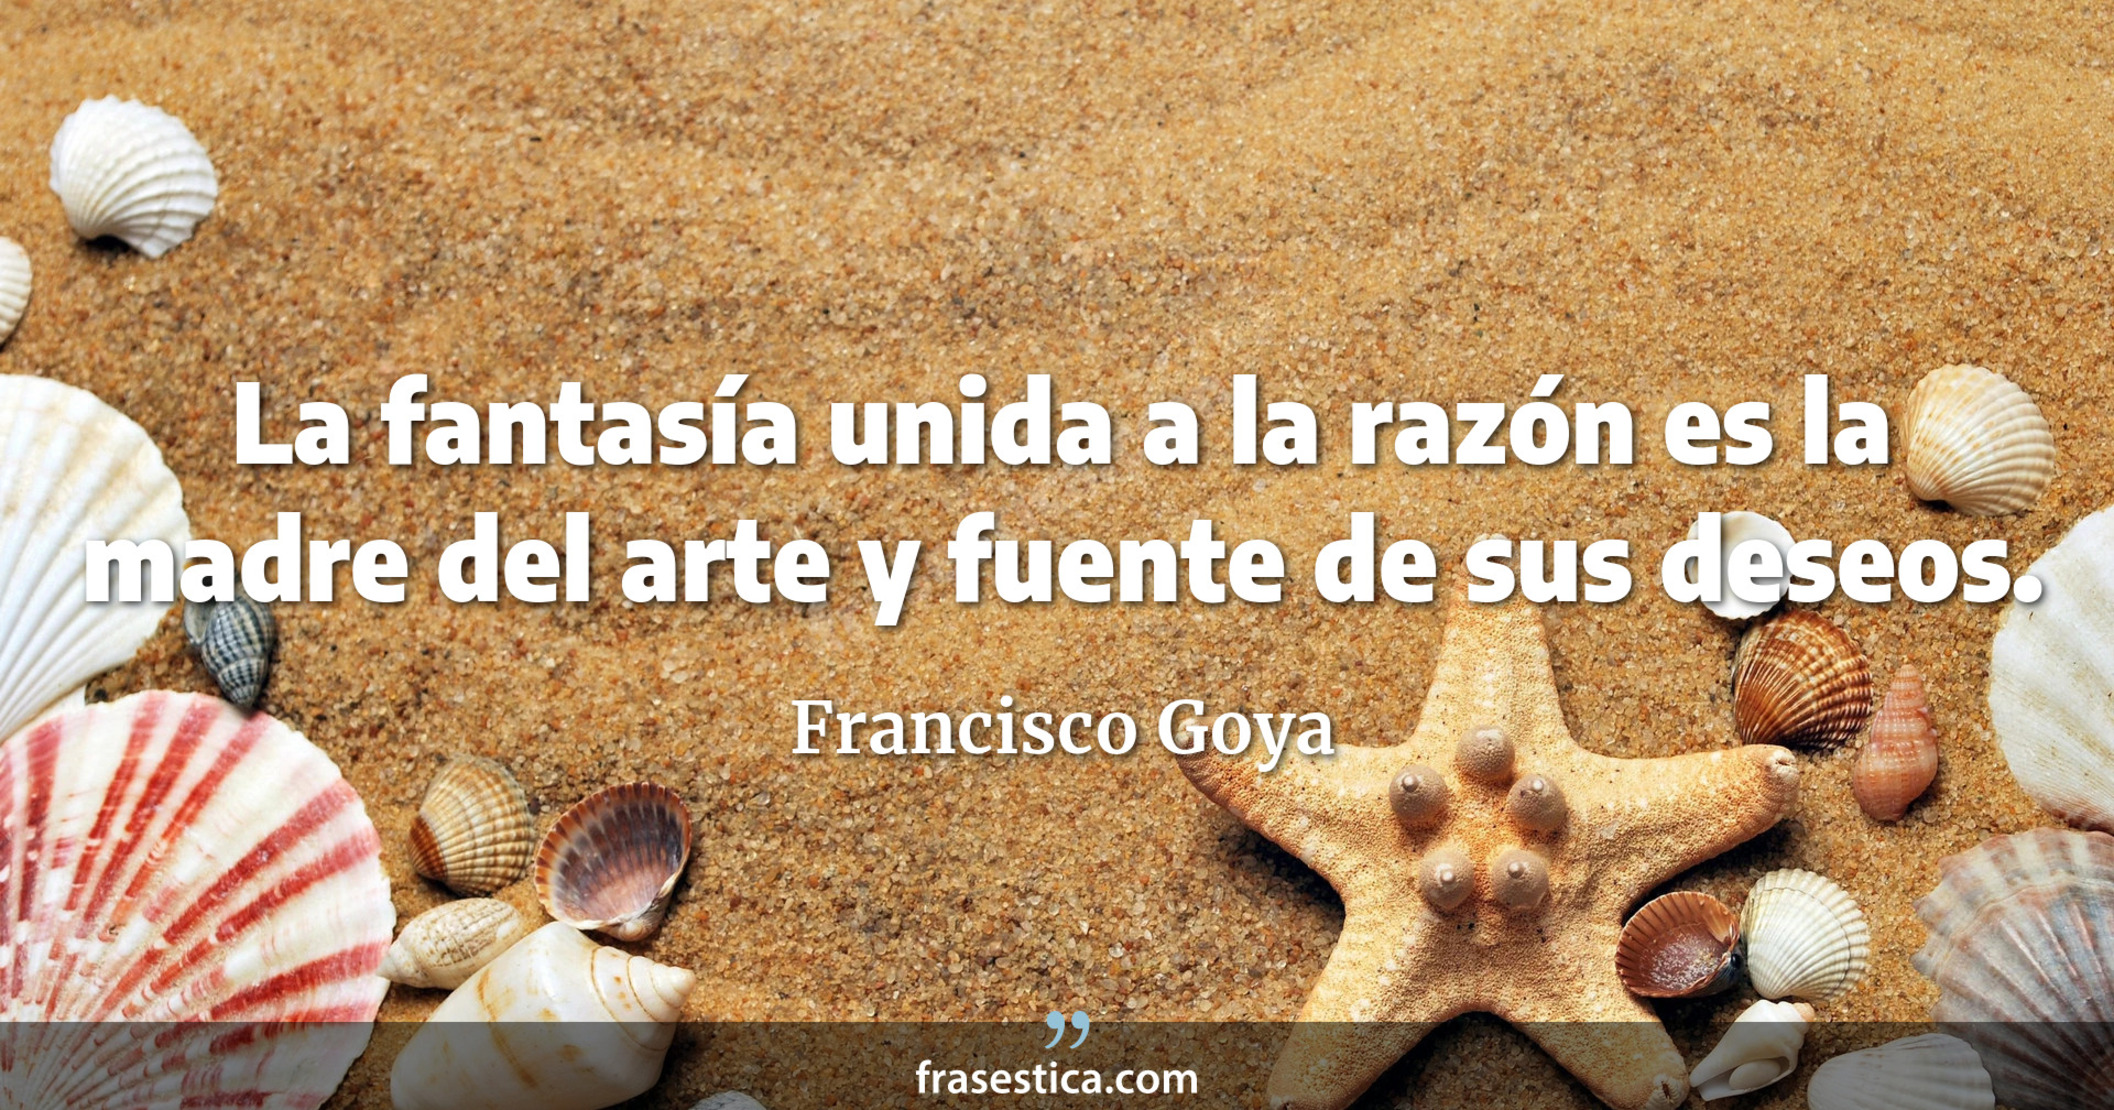 La fantasía unida a la razón es la madre del arte y fuente de sus deseos. - Francisco Goya